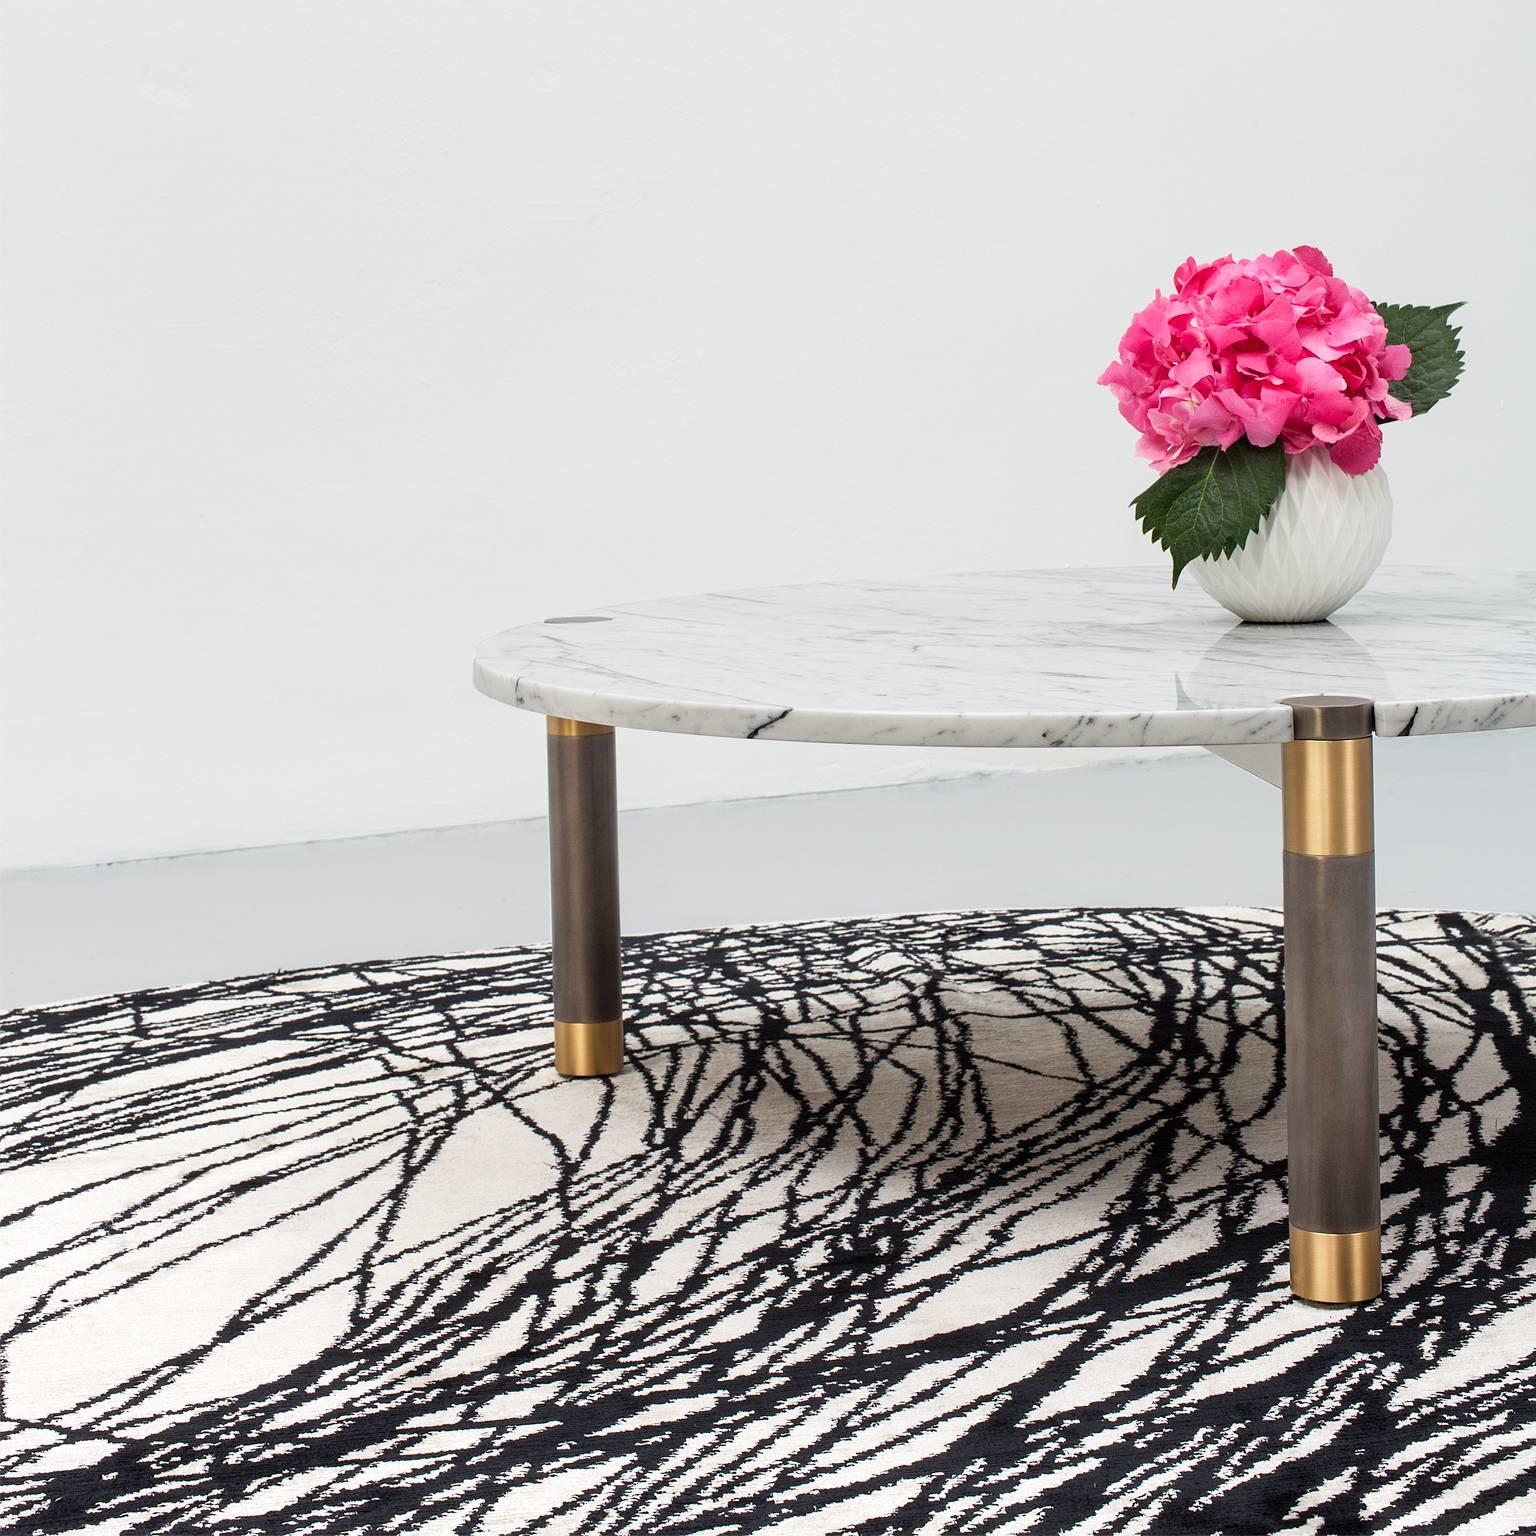 Die Tischkollektion Nova kombiniert verschiedene Metalloberflächen mit Holz- und Steinplatten in unterschiedlichen Formen und Größen. Die Tische sind einzeln oder als verschachteltes Paar in den Größen 30